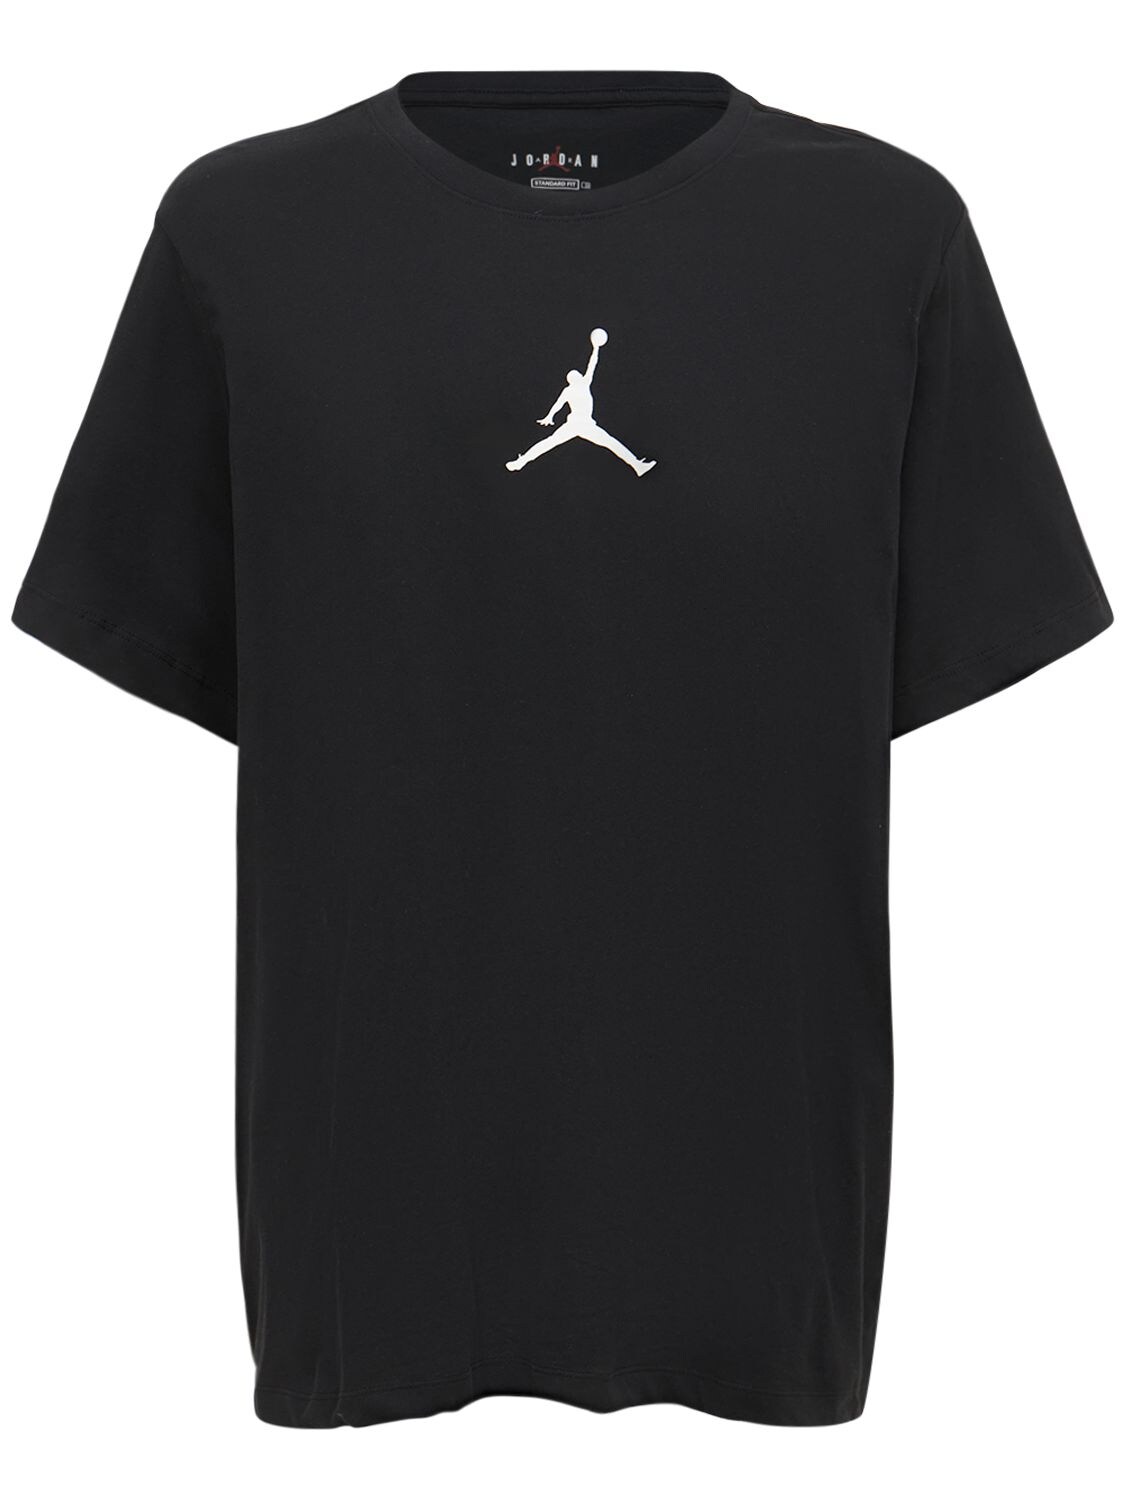 Jordan Logo Printed T-shirt